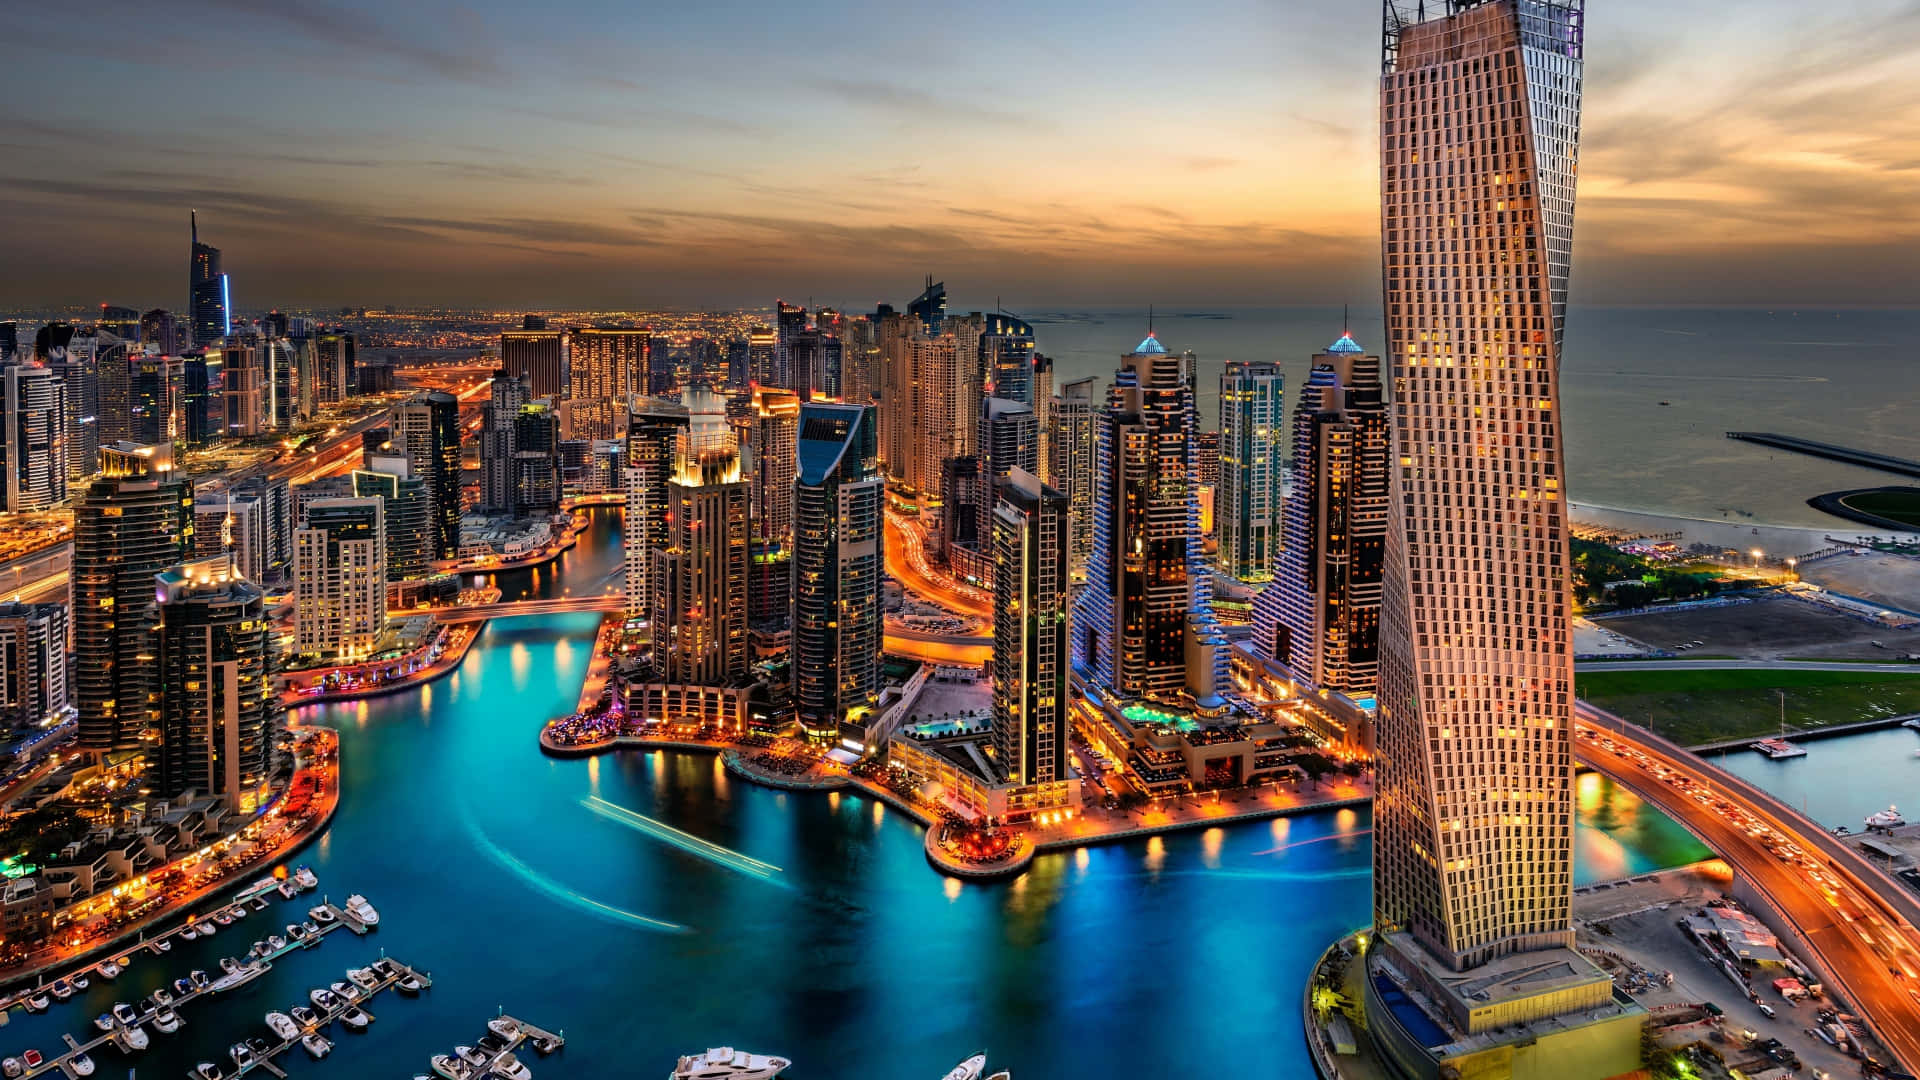 Illuminating modern skyline of Dubai